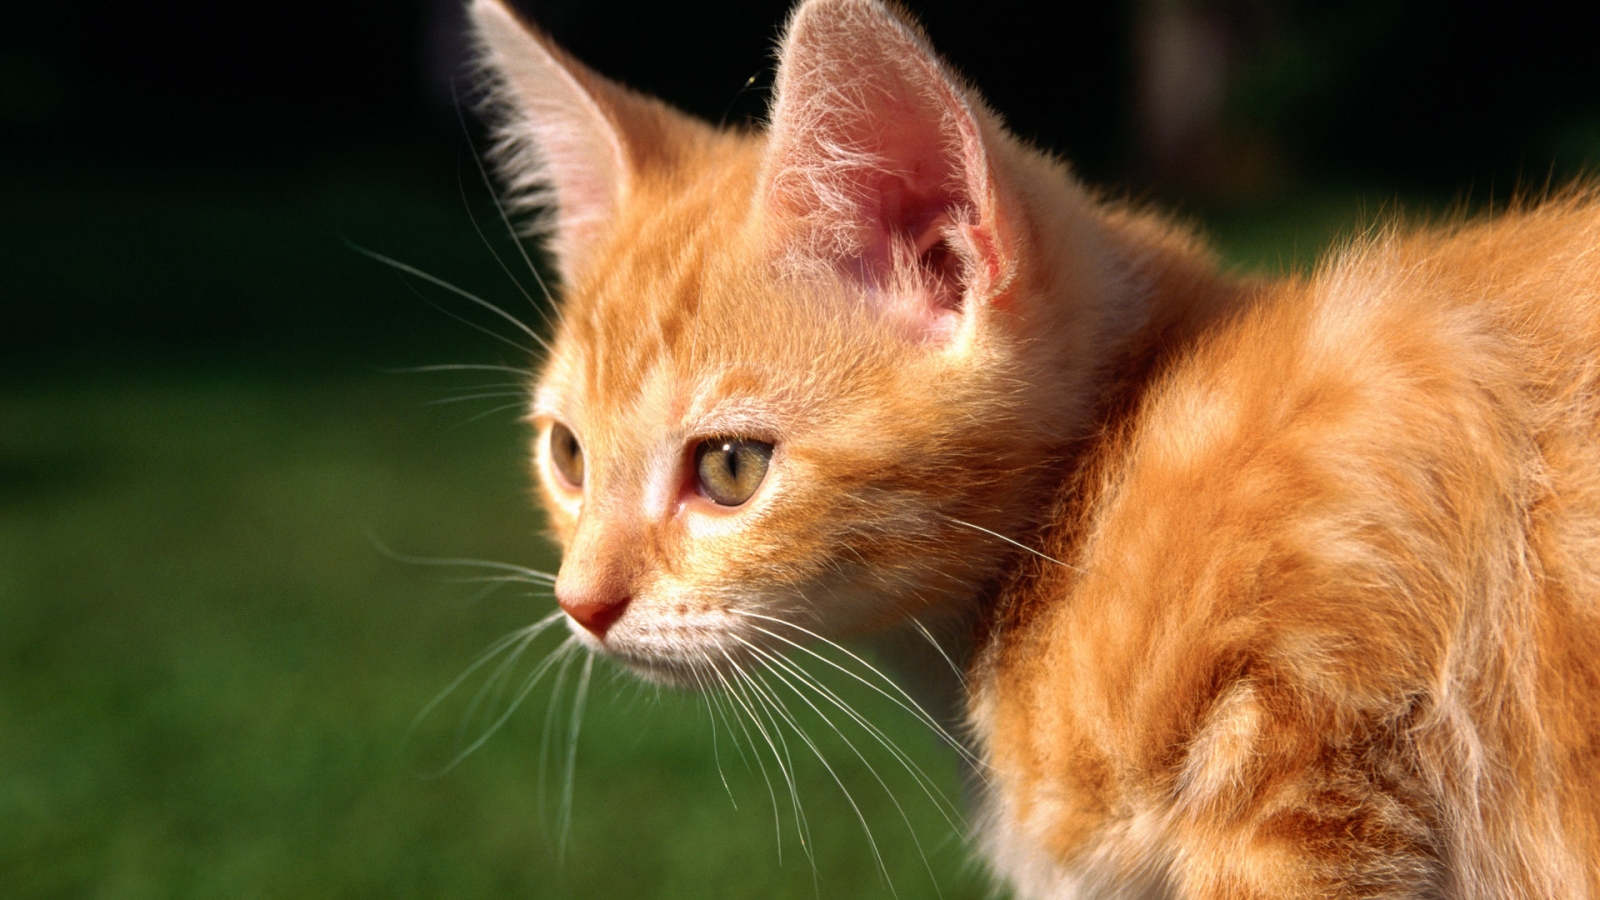 Red Kitten for 1600 x 900 HDTV resolution